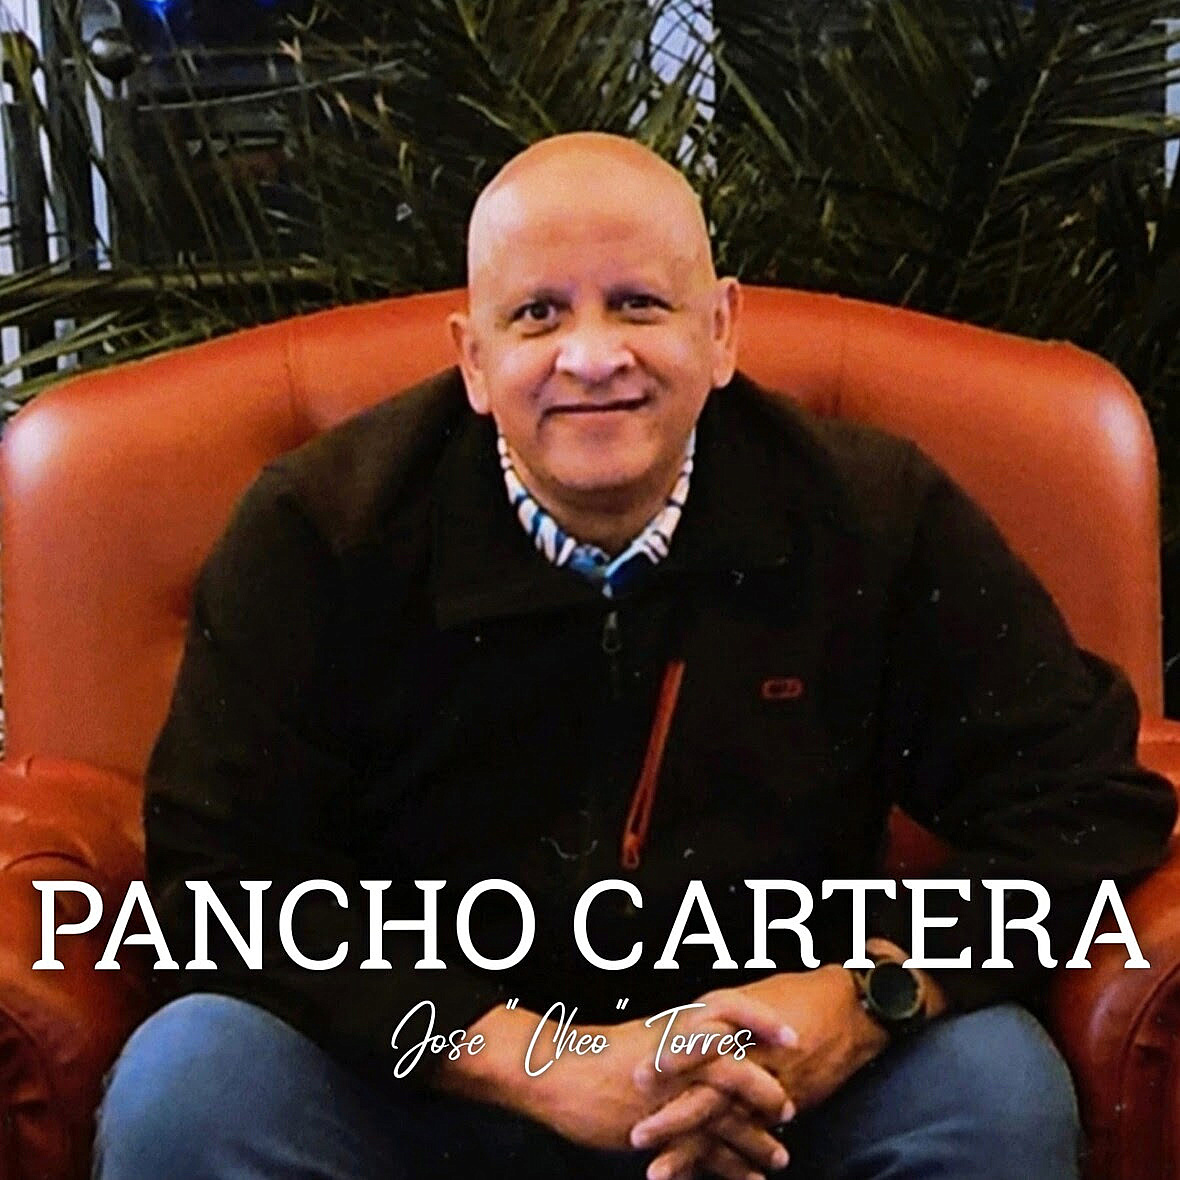 José “Cheo” Torres lanza nuevo tema “Pancho Cartera”